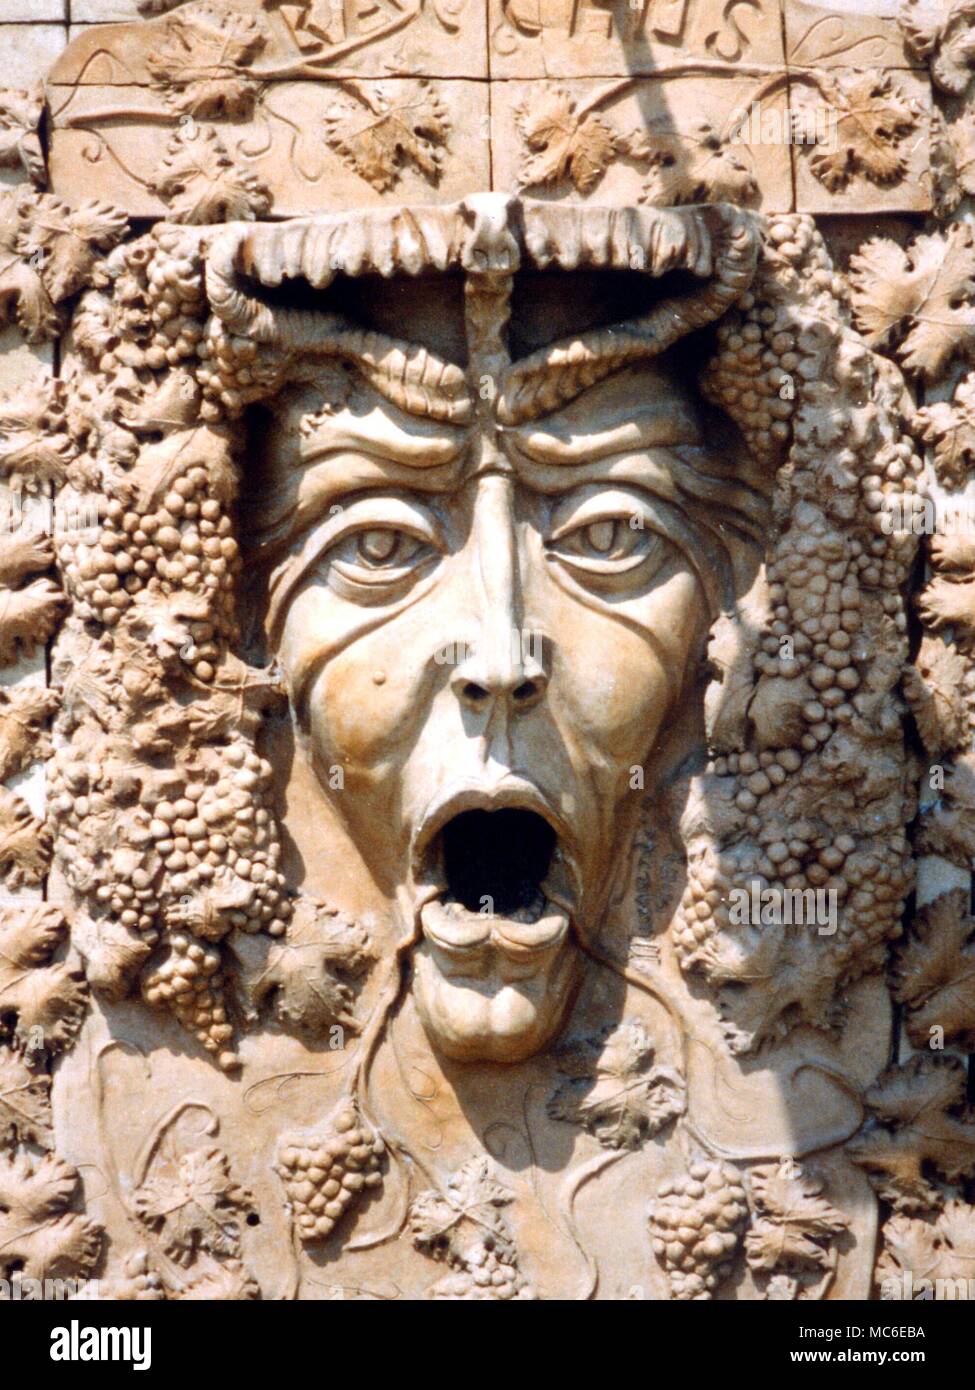 La mythologie grecque, Bacchus. Bas-relief du dieu du vin, Bacchus. Situé dans le mur d'une maison moderne à proximité de Taormina, Sicile Banque D'Images